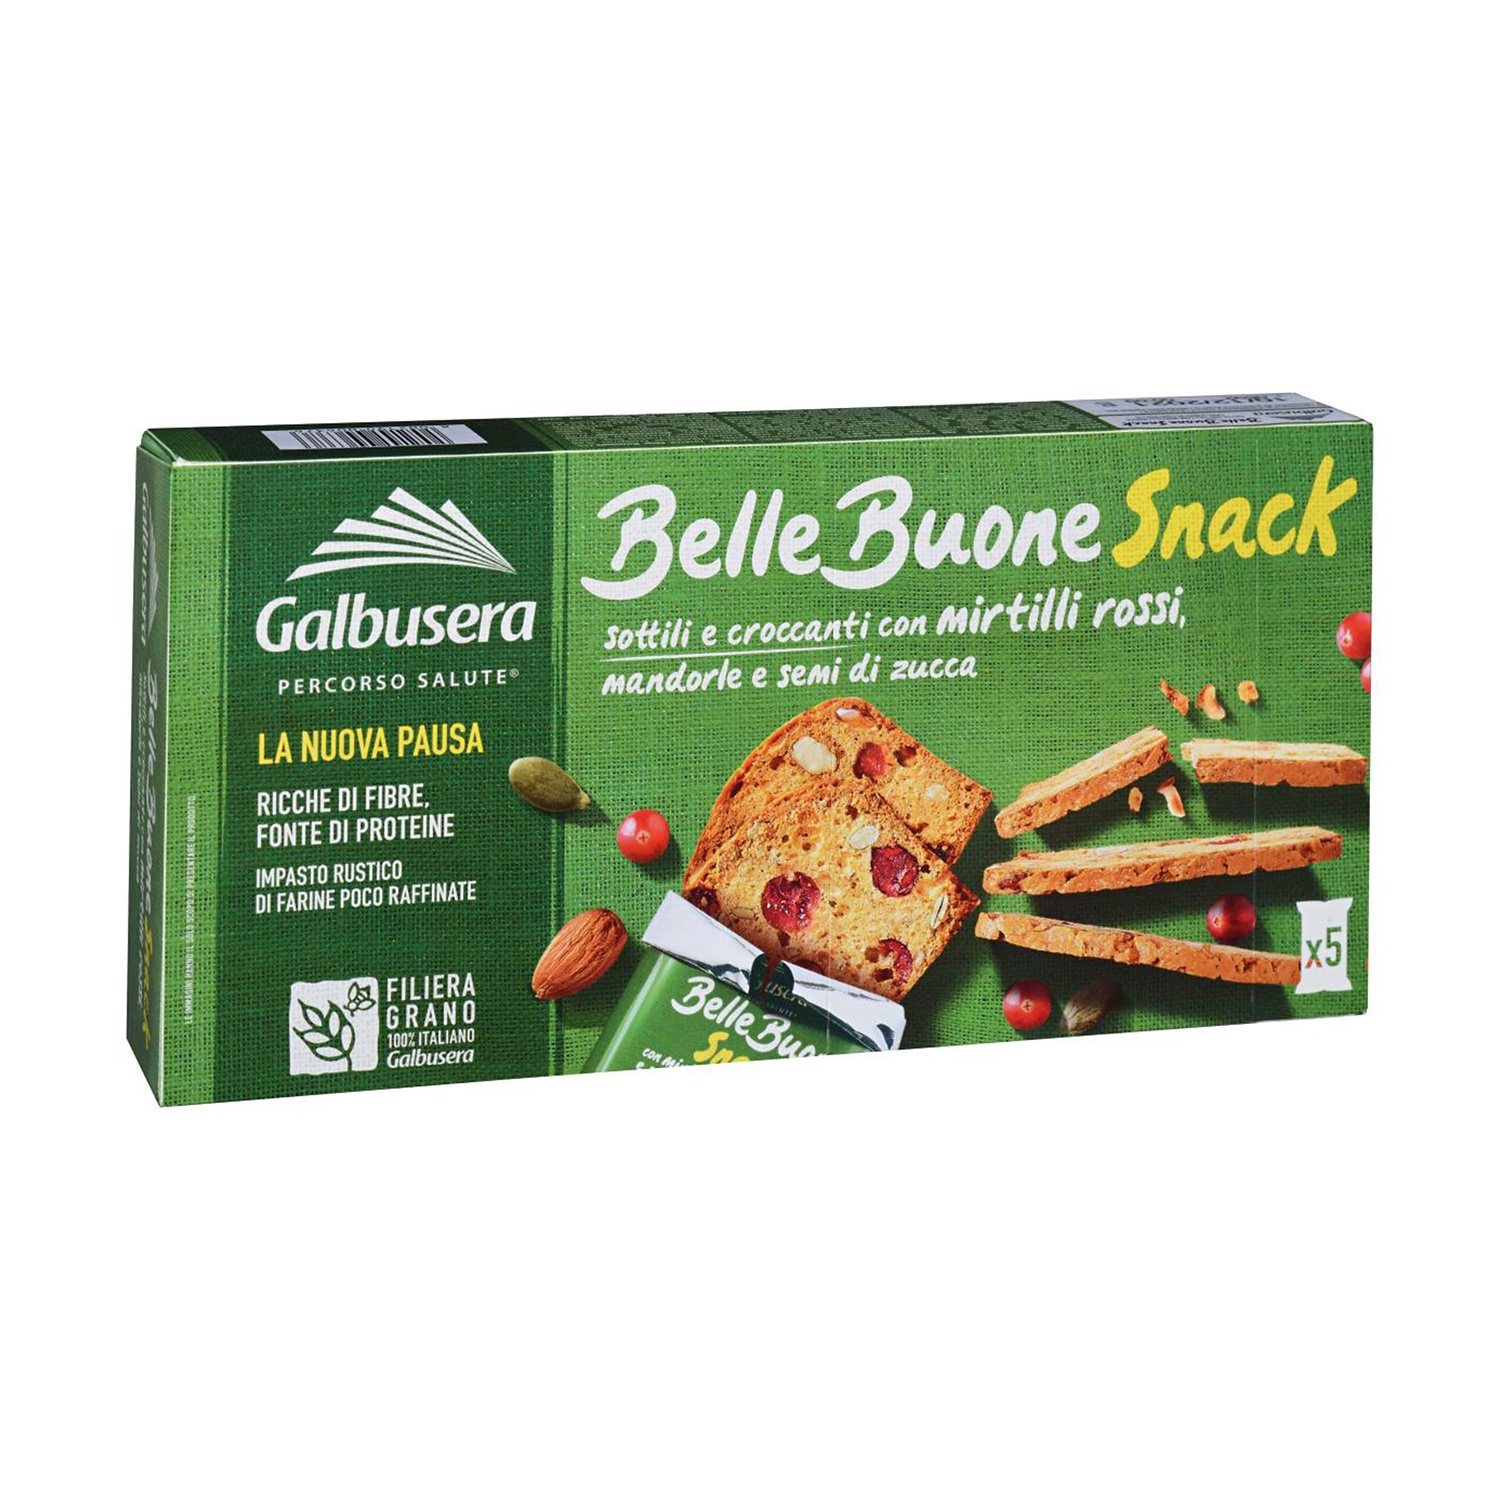 GALBUSERA Belle Buone Snack